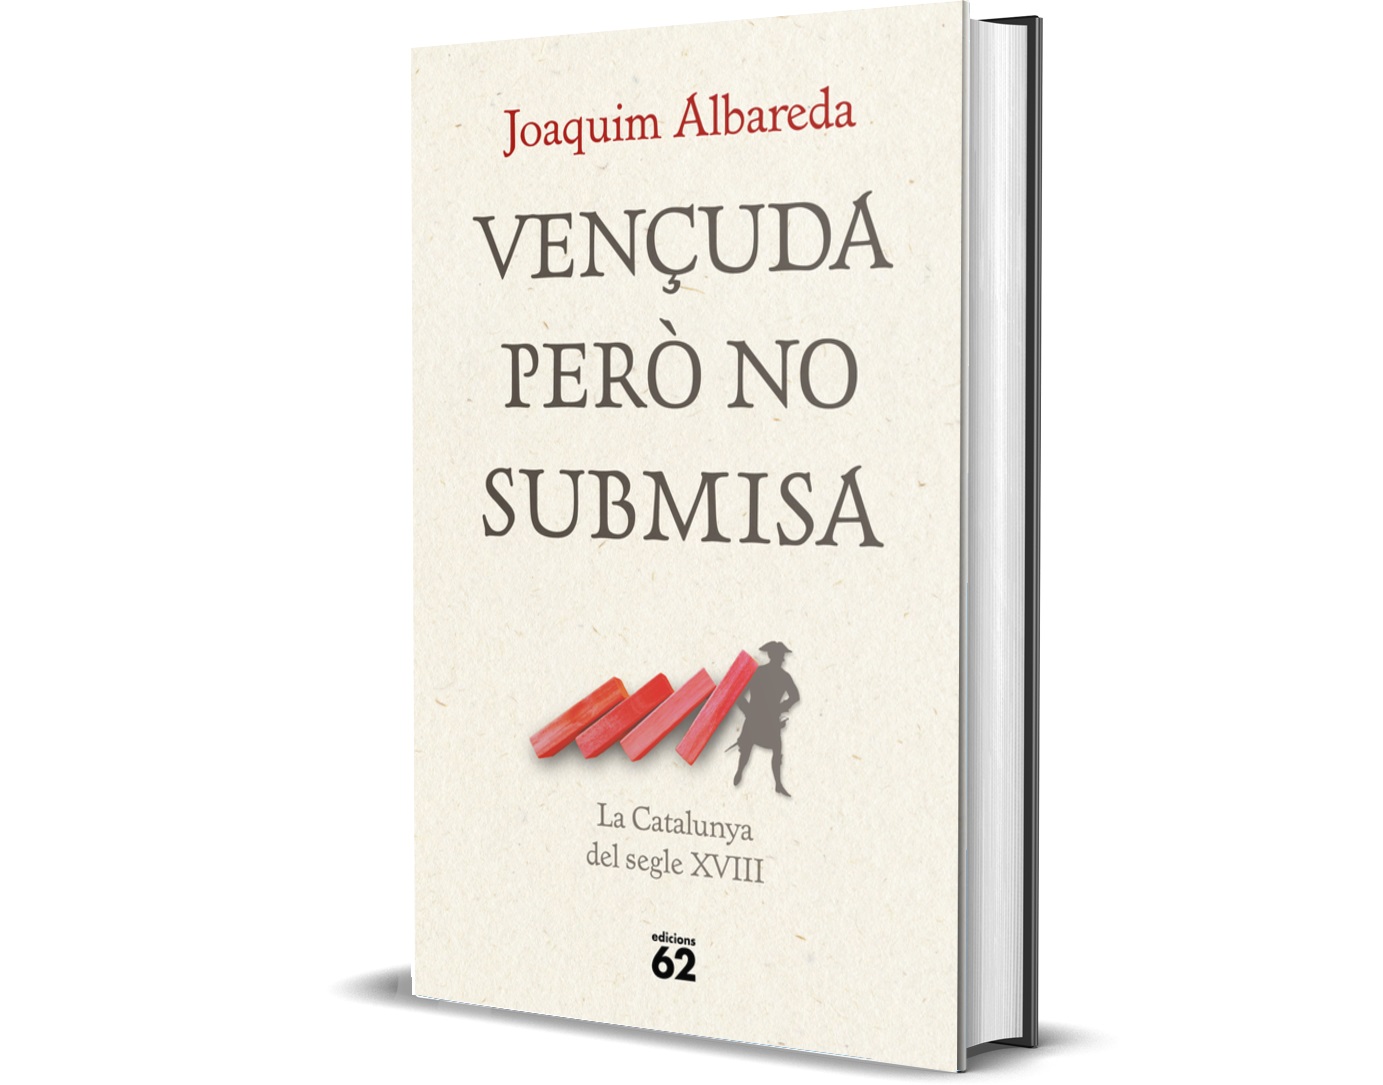 Joaquim Albareda posa llum a la història política de la Catalunya del segle XVIII amb l’obra “Vençuda però no submisa”